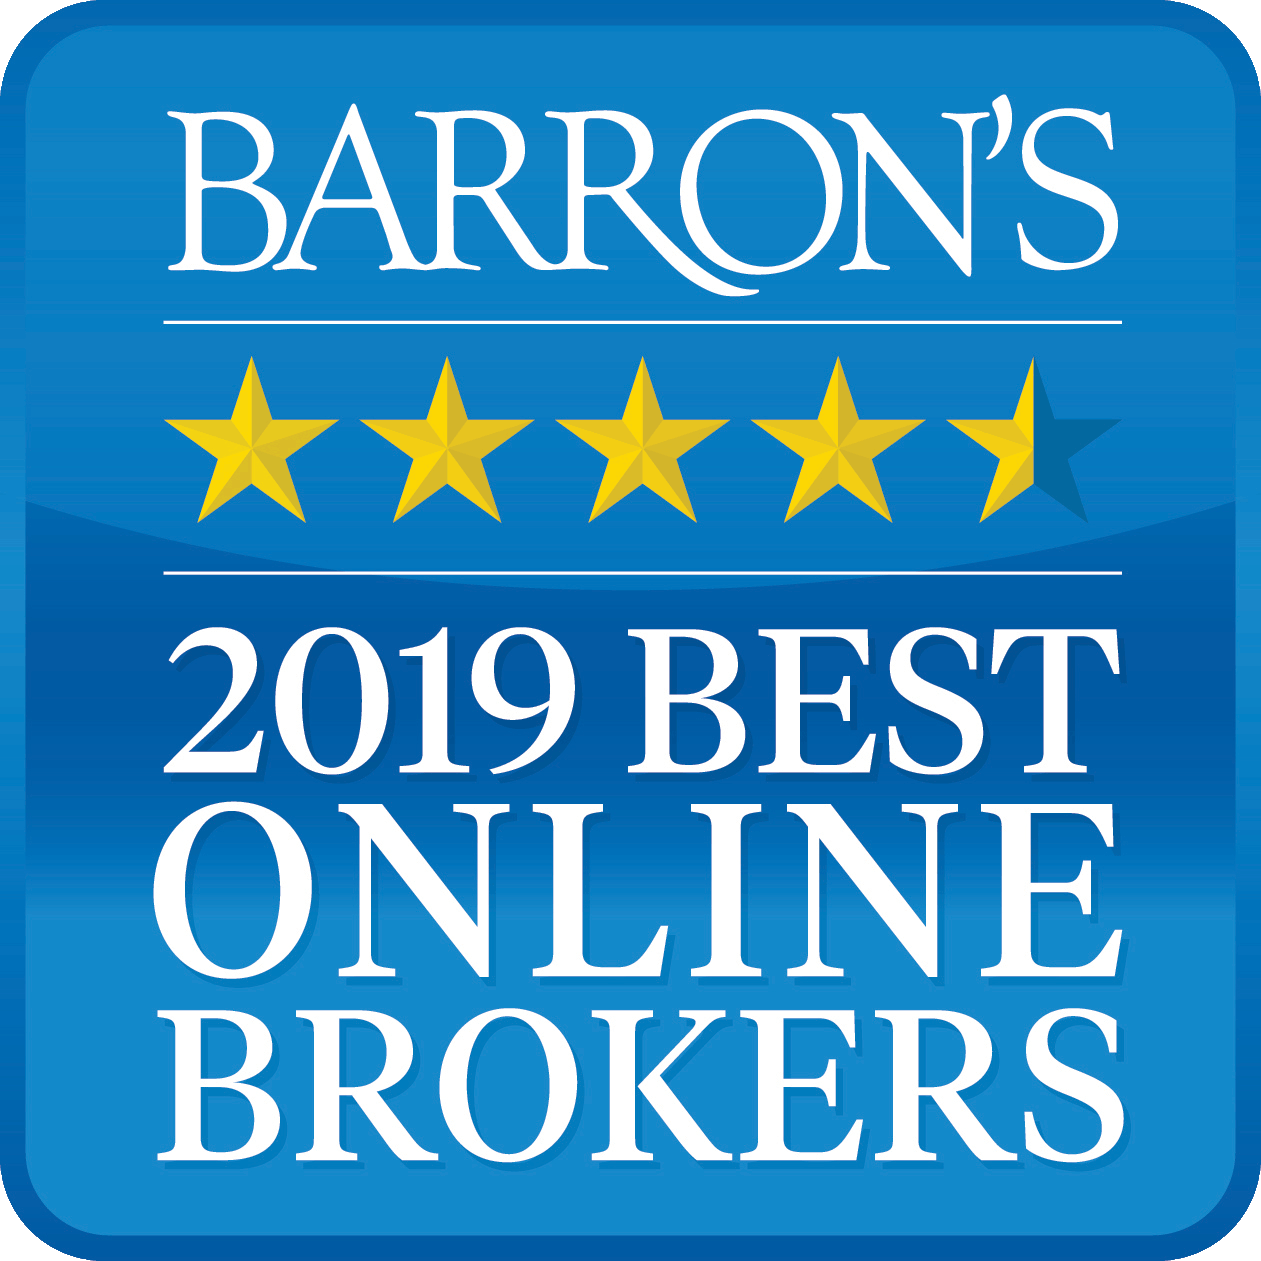 インタラクティブ・ブローカーズはバロンズ紙2019年度「ベスト・オンライン・ブローカー」の評価を受けました。